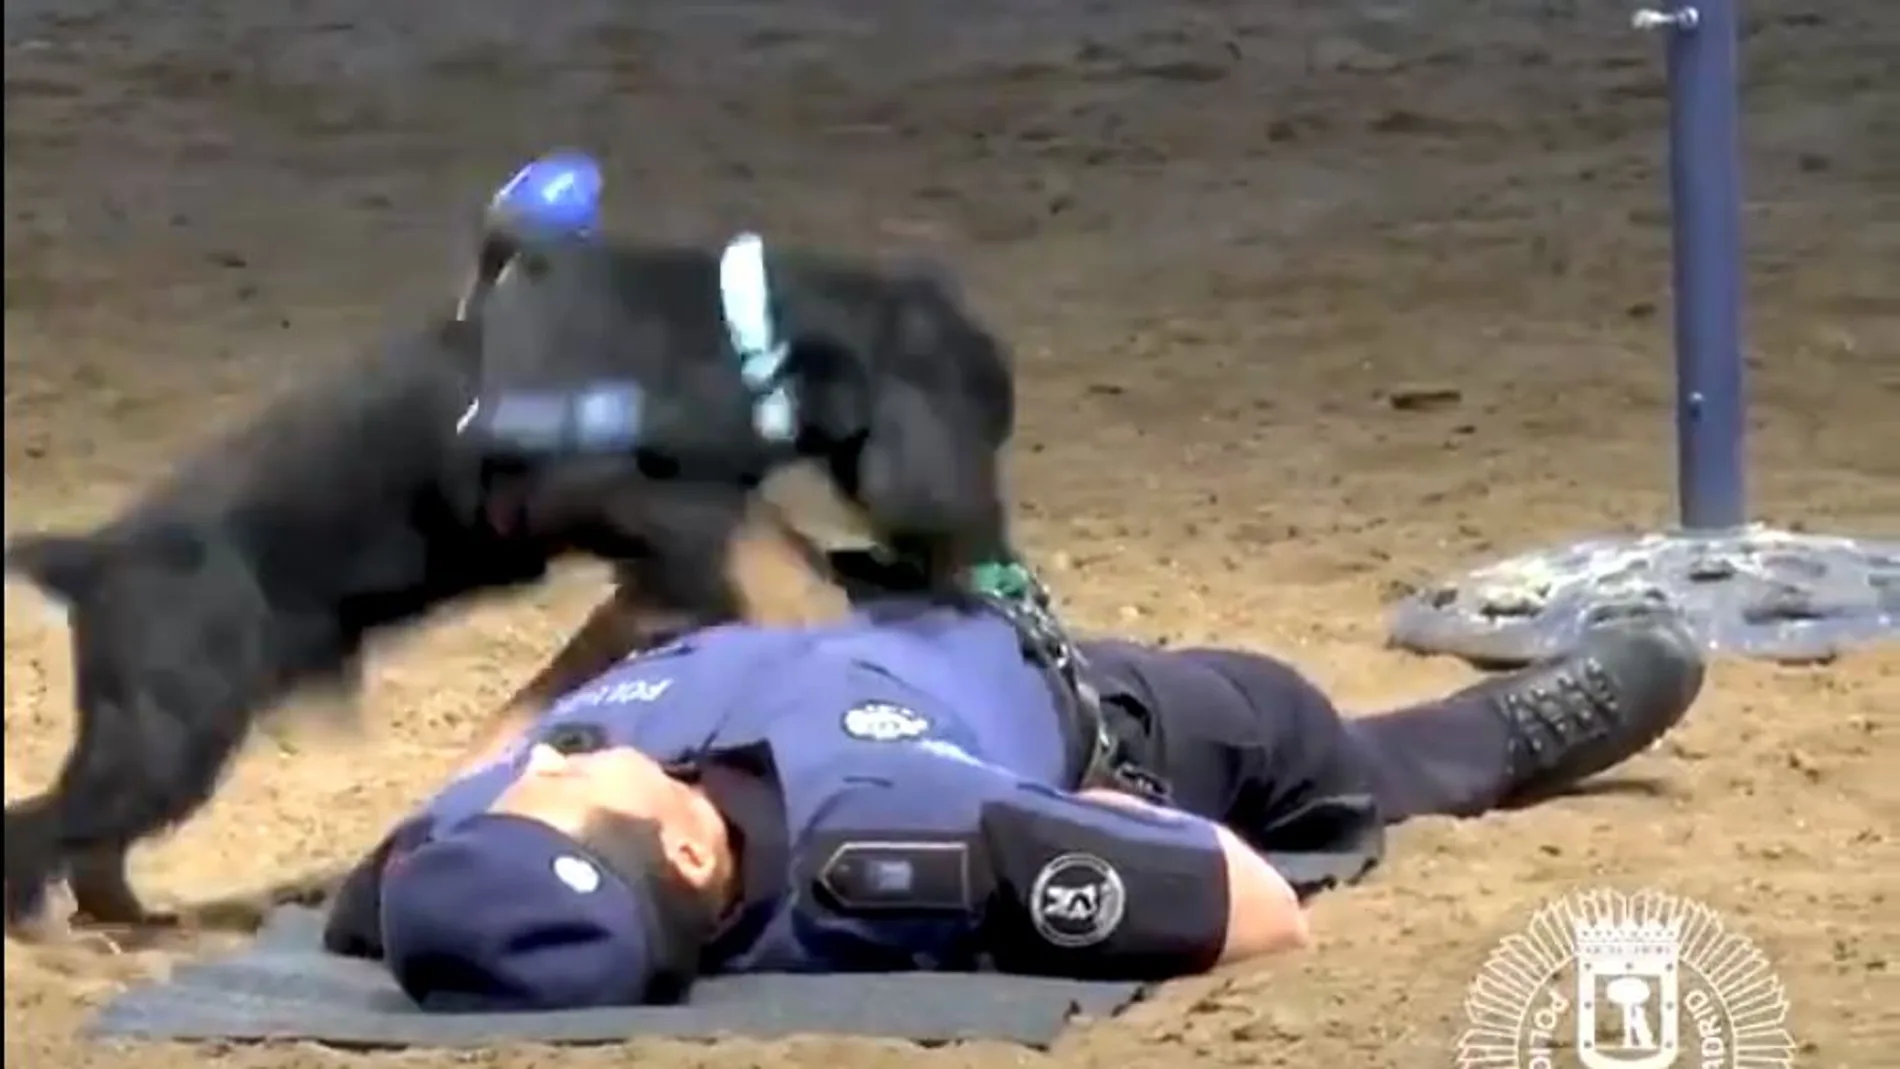 El can practicando una reanimación cardiopulmunar (RCP). Foto: Twitter Policía de Madrid.